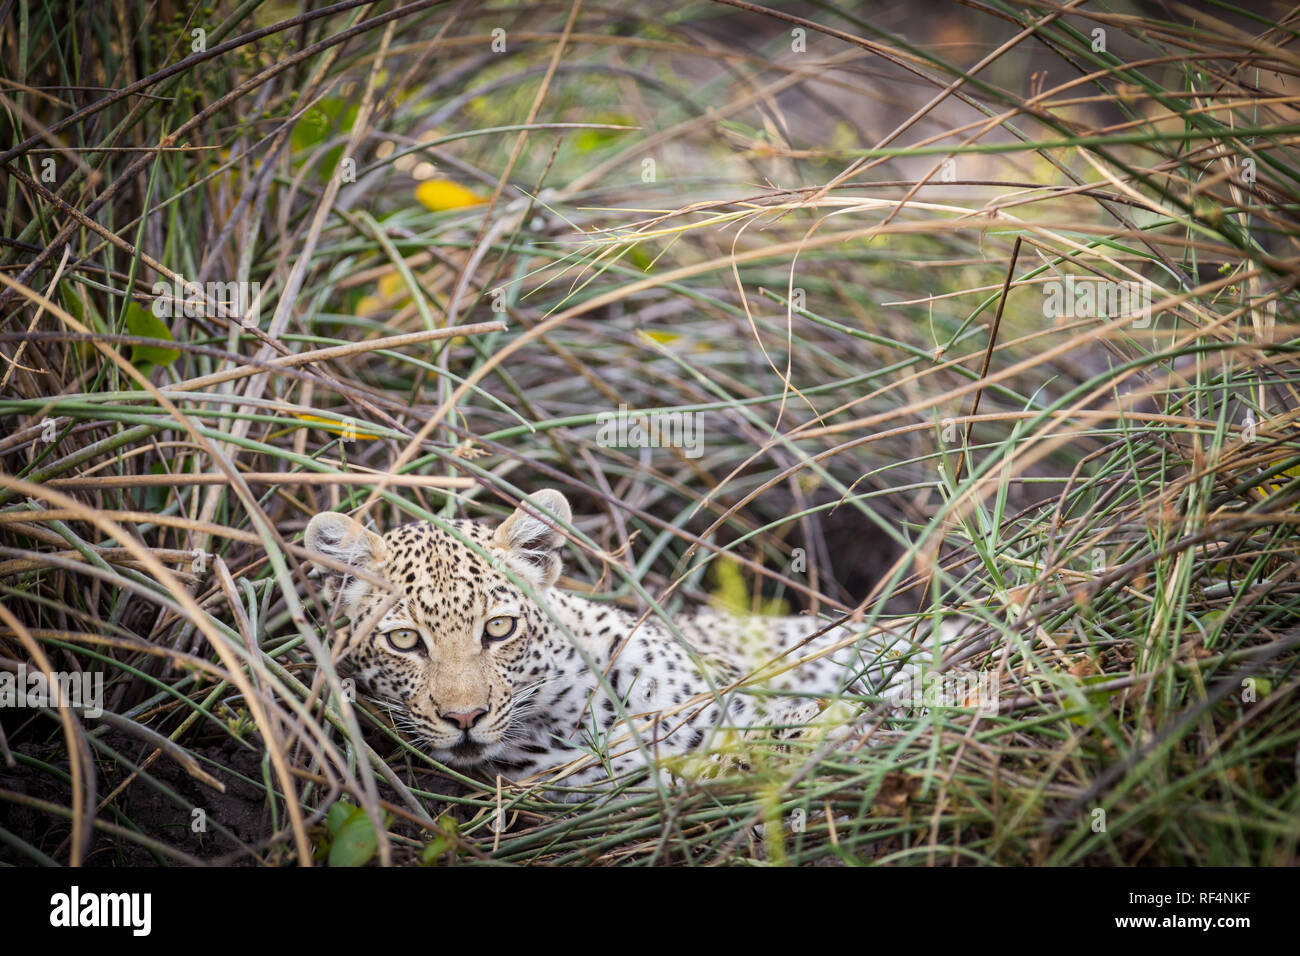 Molte zone del delta dell'Okavango, Nord Ovest distretto, Botswana sono famosi per frequenti opportunità di vedere grandi felini come il leopardo, Panther pardus Foto Stock